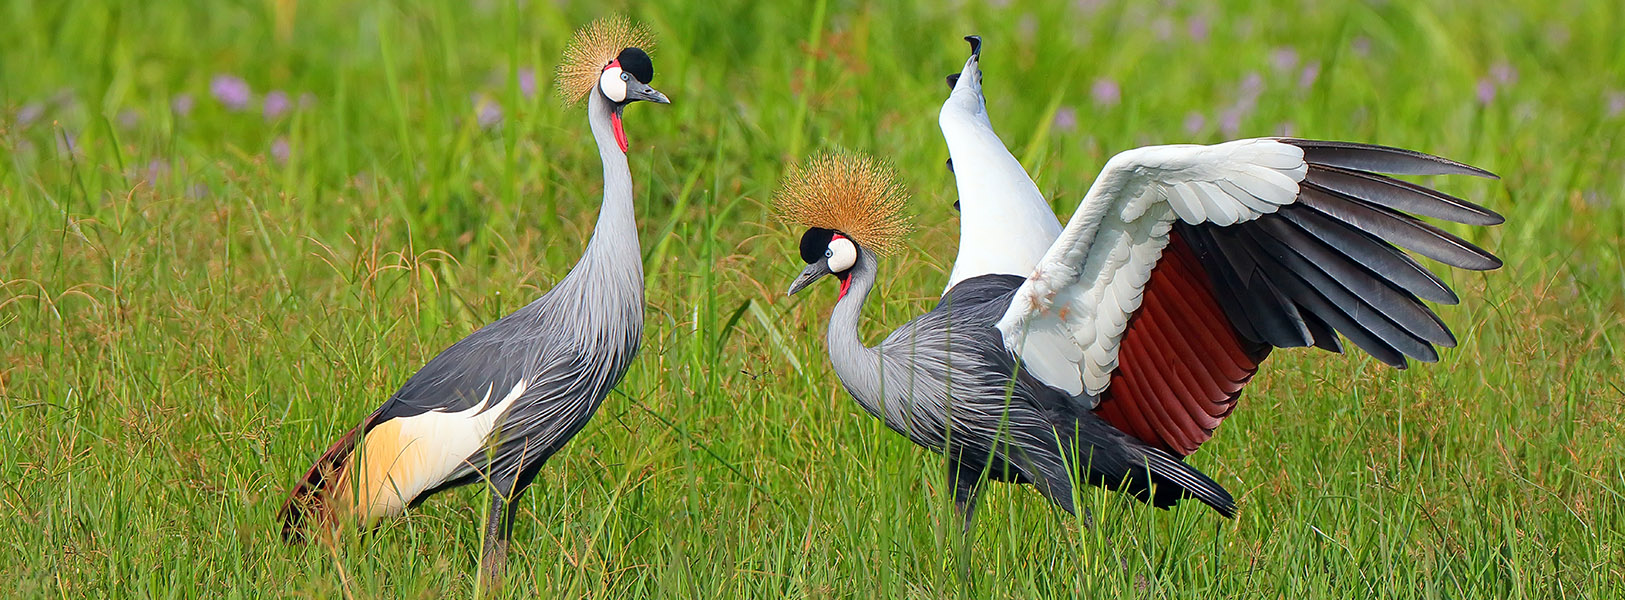 Uganda Birding & Wildlife Safari